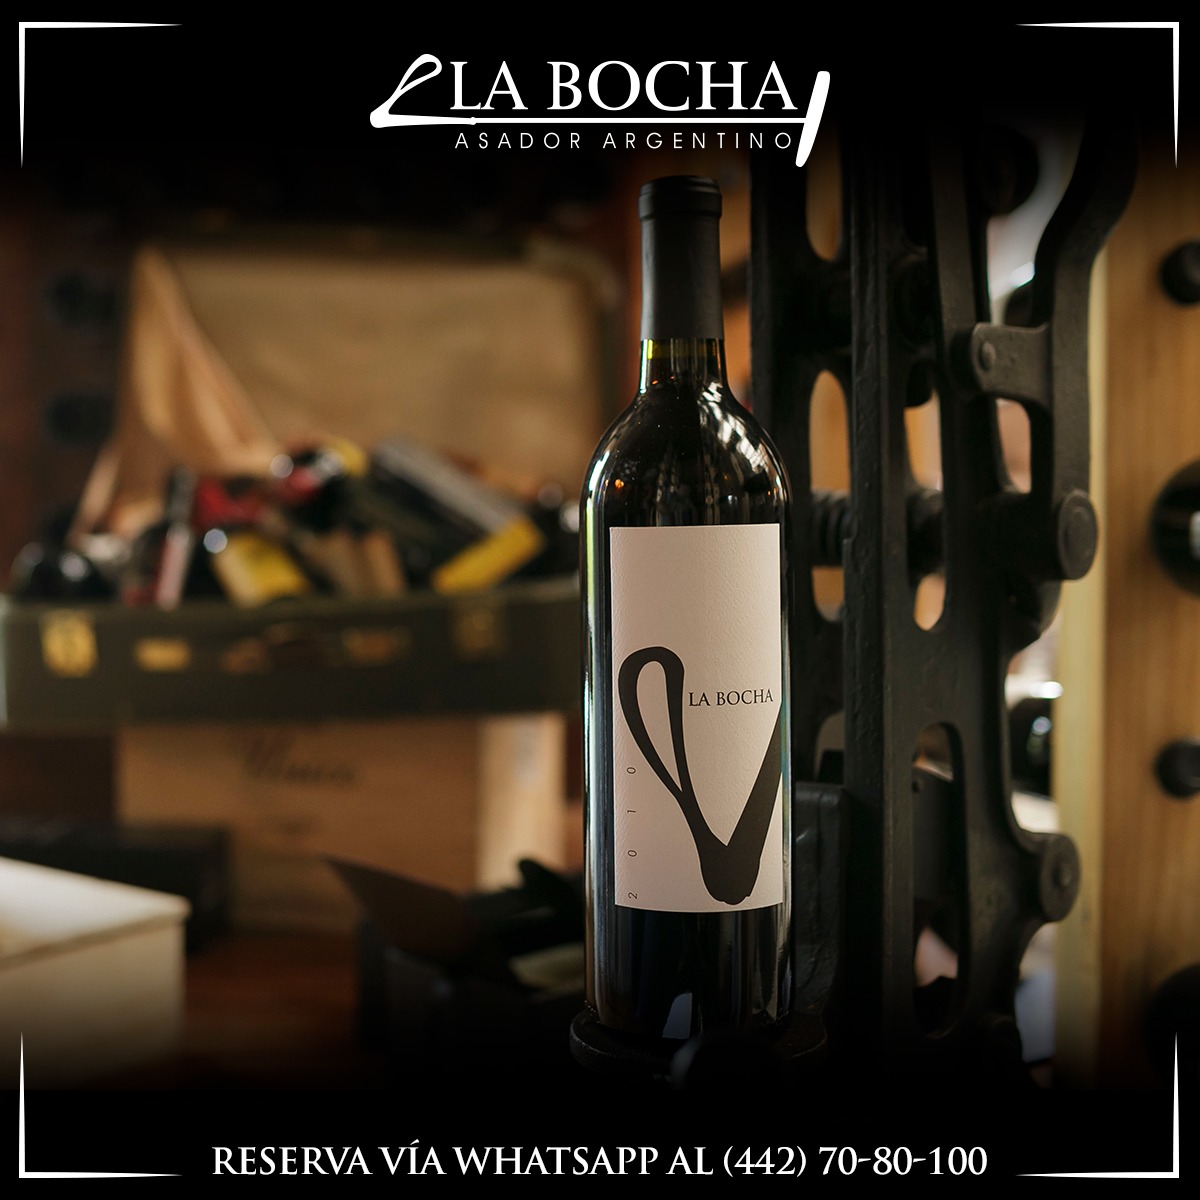 ¡Listo para las ocasiones especiales!

#BochaTime #LaBocha #restaurantesaguascalientes #Aguascalientes #asadorargentino #empanadas #saborargentino #newspot